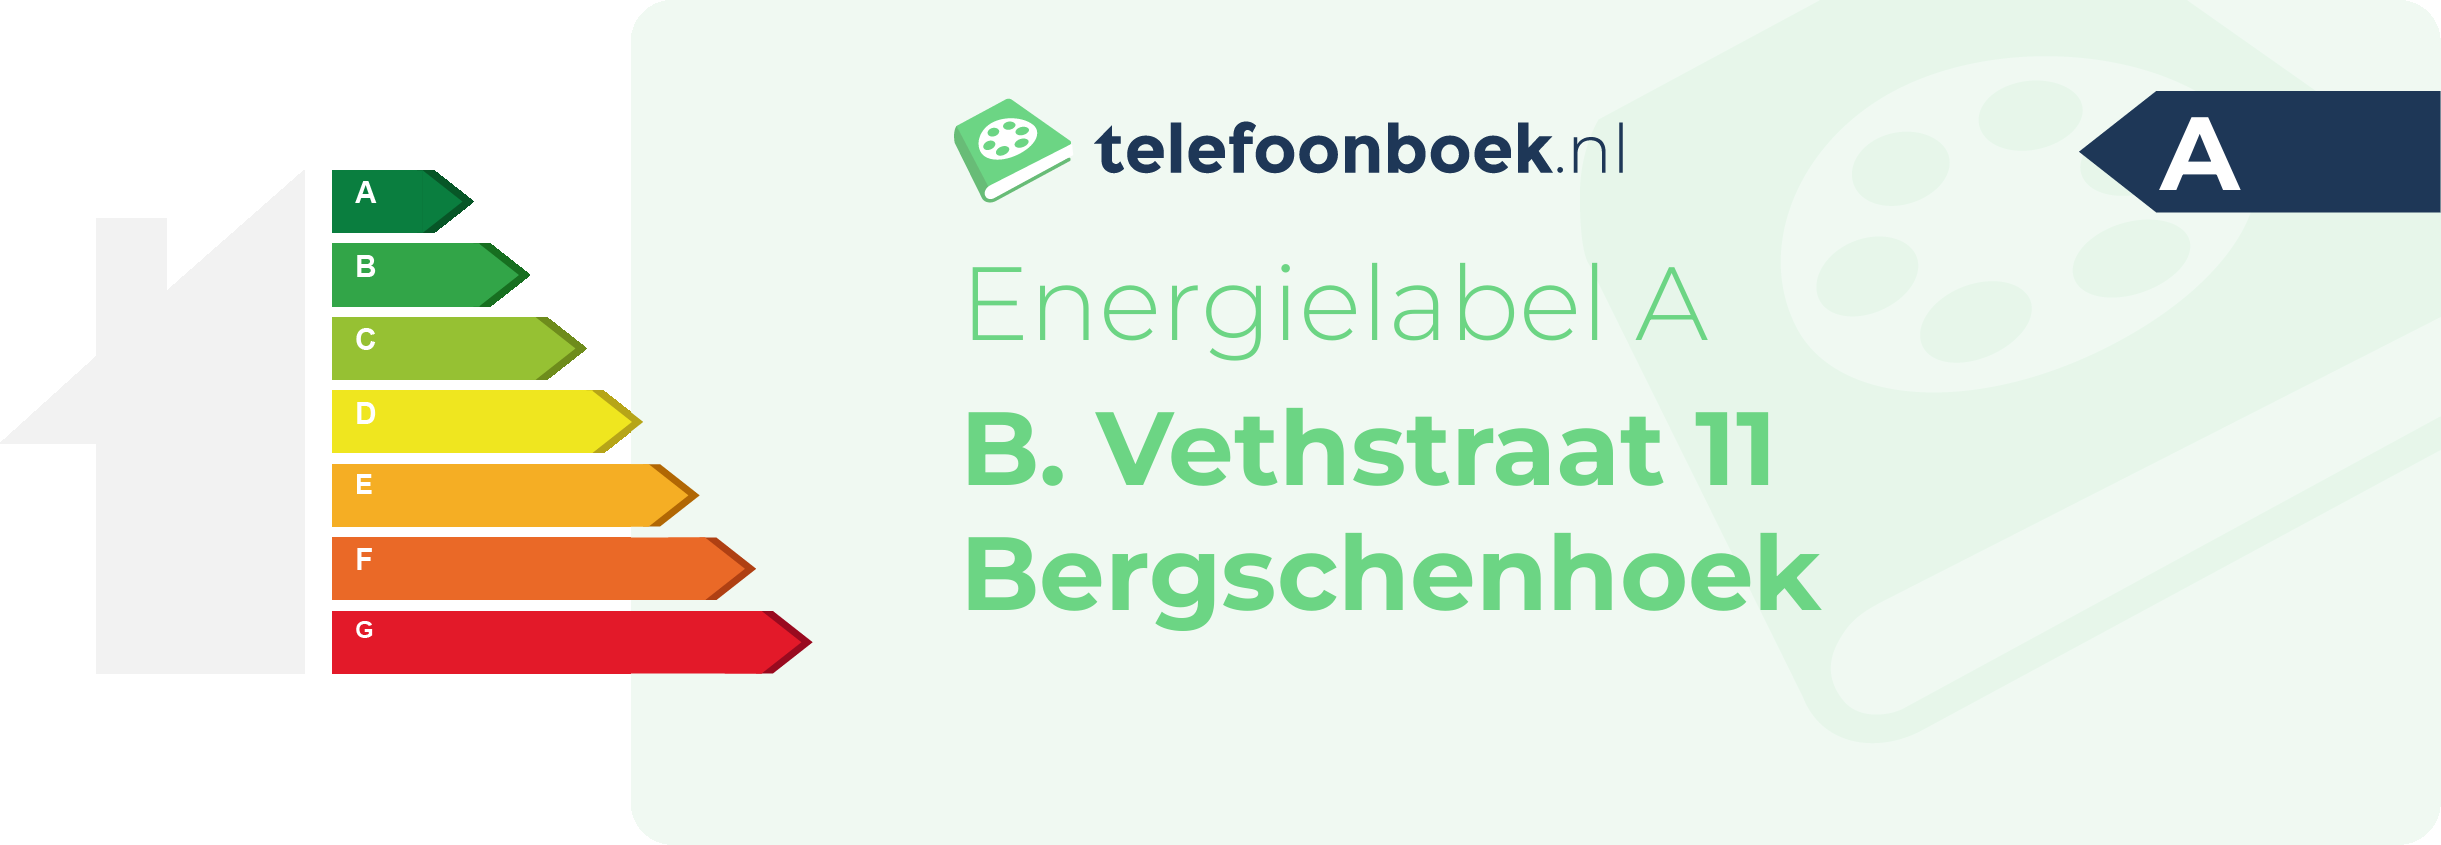 Energielabel B. Vethstraat 11 Bergschenhoek